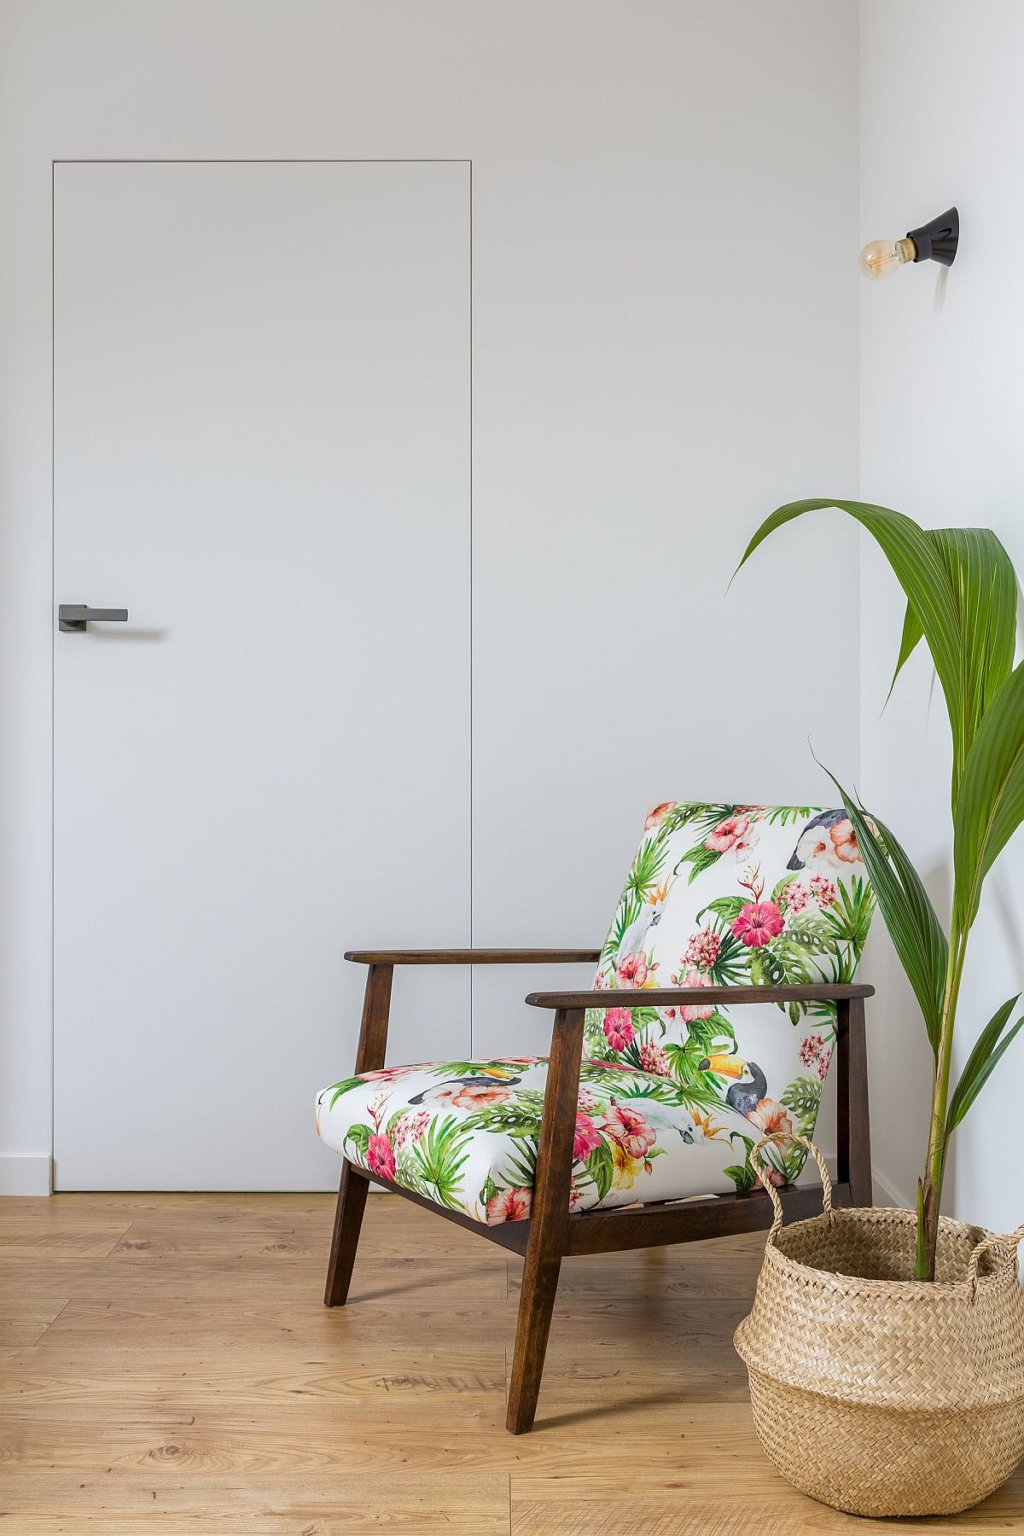 hình ảnh góc đọc sách thoáng sáng, đẹp mắt trong căn hộ 52m2 với ghế tựa bọc nệm họa tiết hoa lá nhiệt đới, chậu cây xanh trang trí